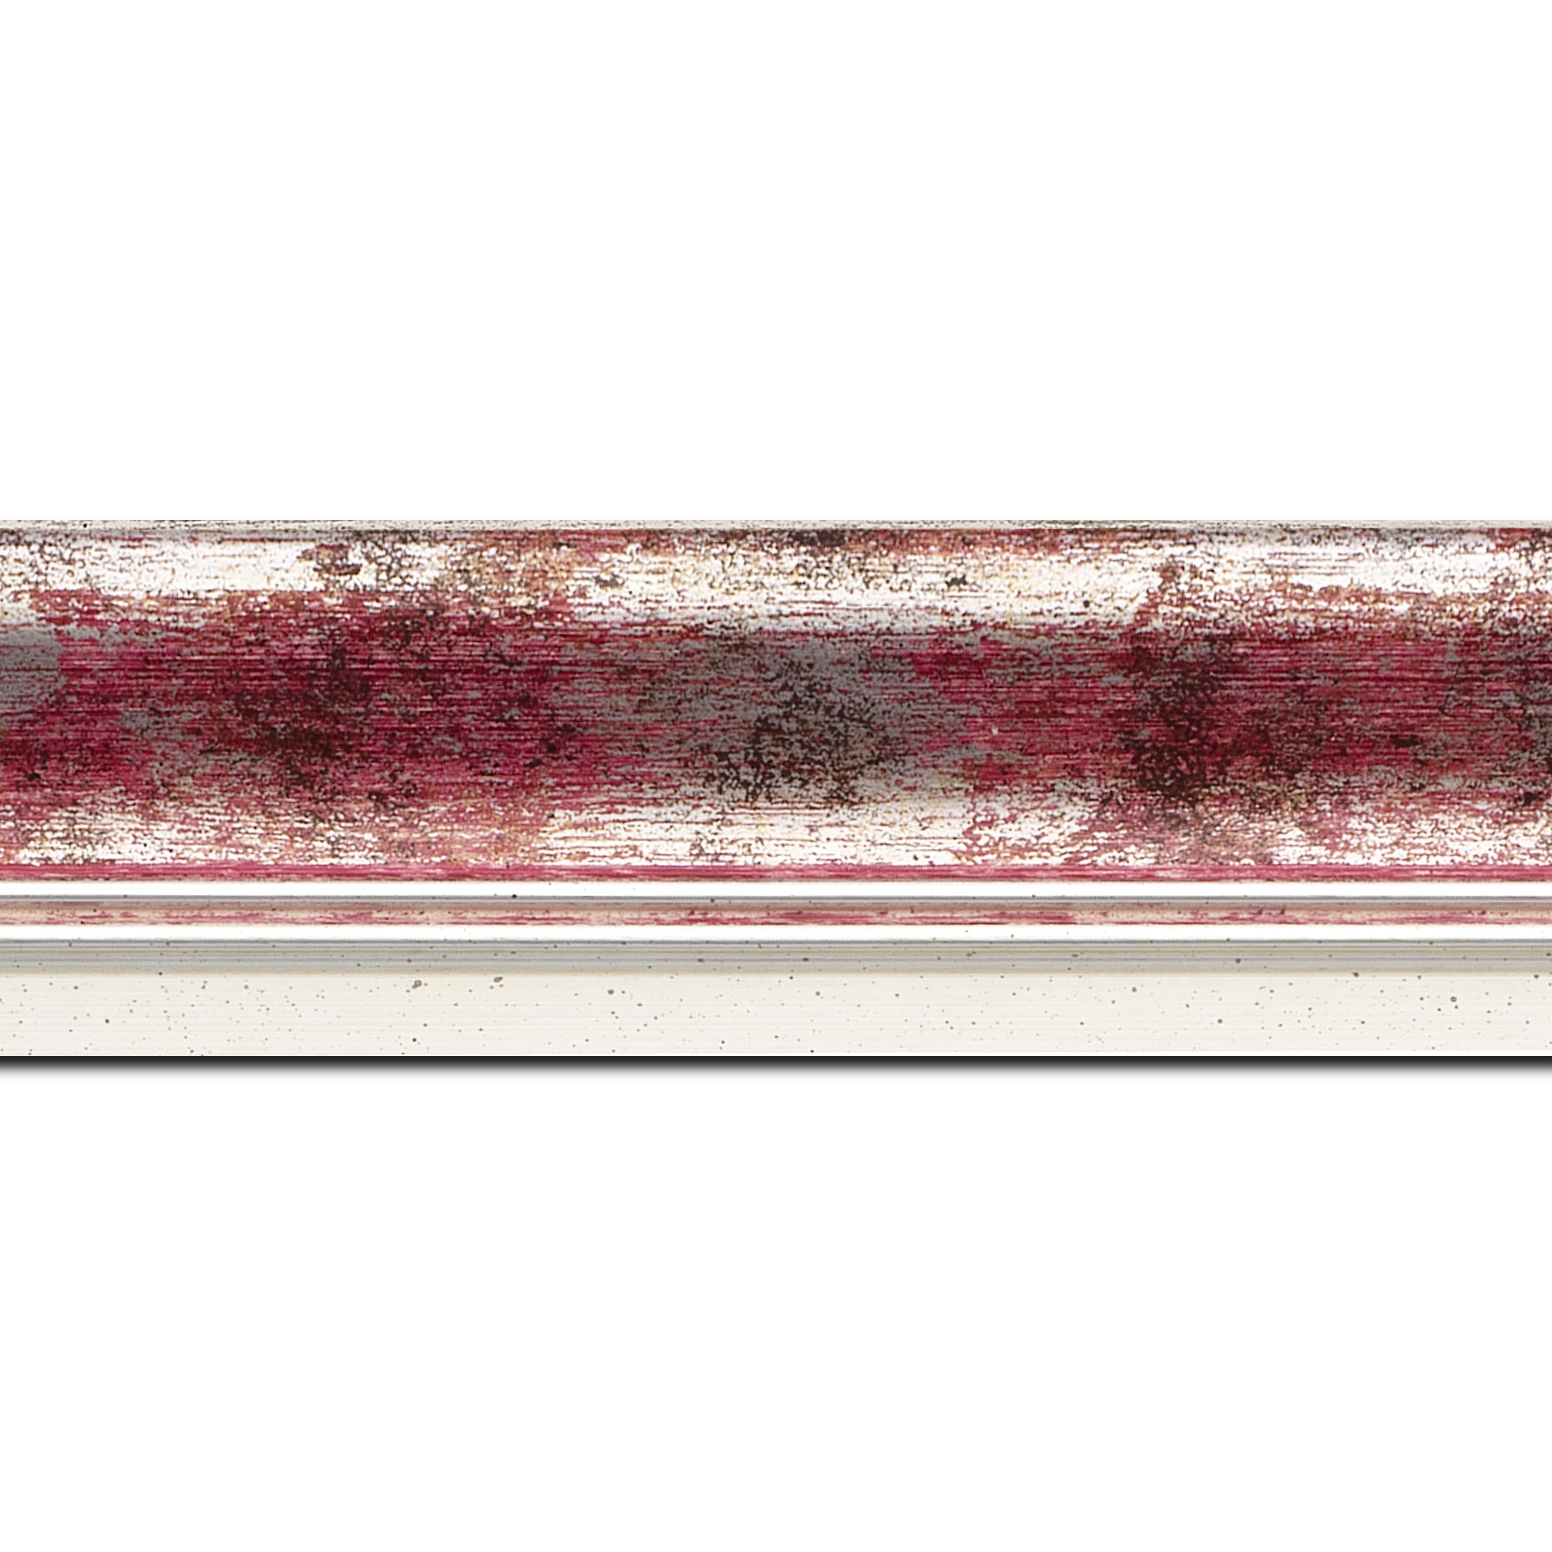 Baguette longueur 1.40m bois profil incurvé largeur 5.7cm de couleur rose fushia fond argent marie louise blanche mouchetée filet argent intégré